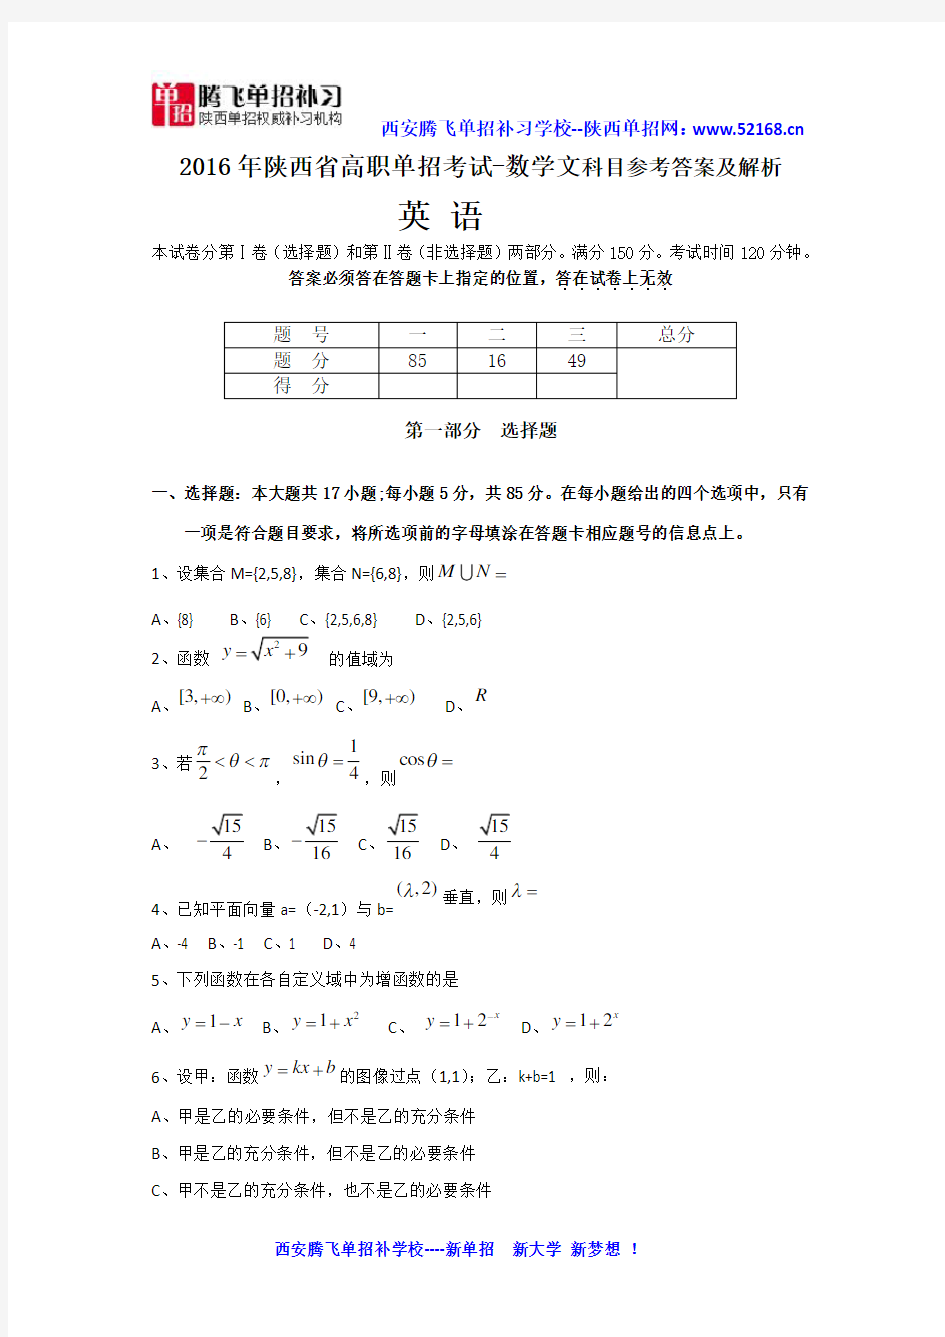 2016年陕西单招示范高职考试数学文试卷